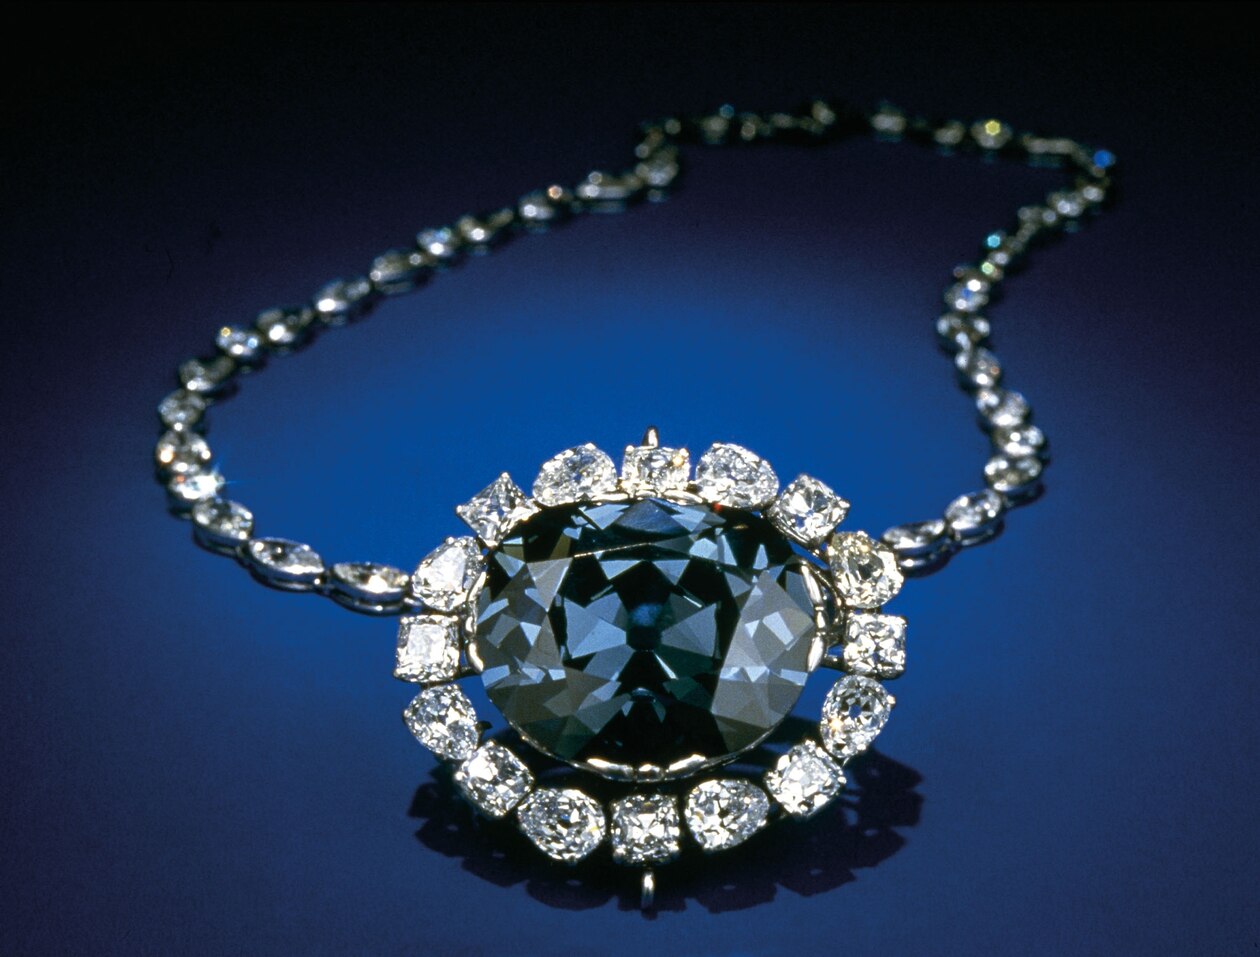 ギャラリー 世界最大のブルーダイヤモンドの数奇な運命 画像6点 ナショナルジオグラフィック日本版サイト